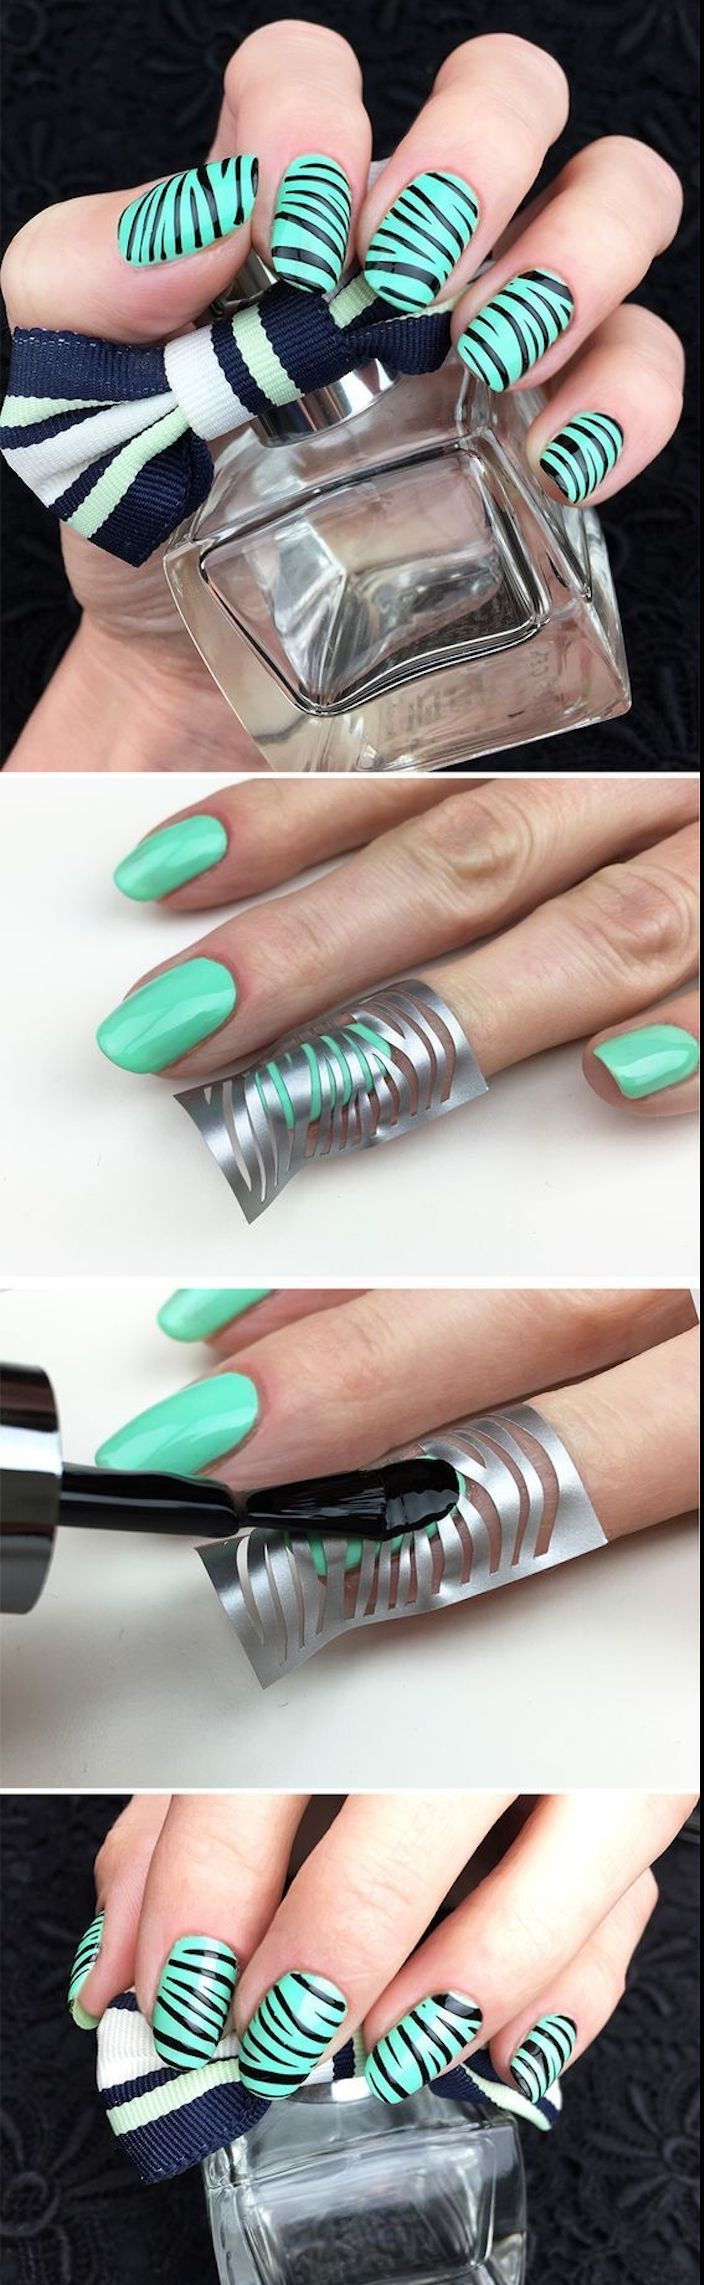 nagel design galleri, zebra naglar gör dig själv, nagel design i grönt och svart